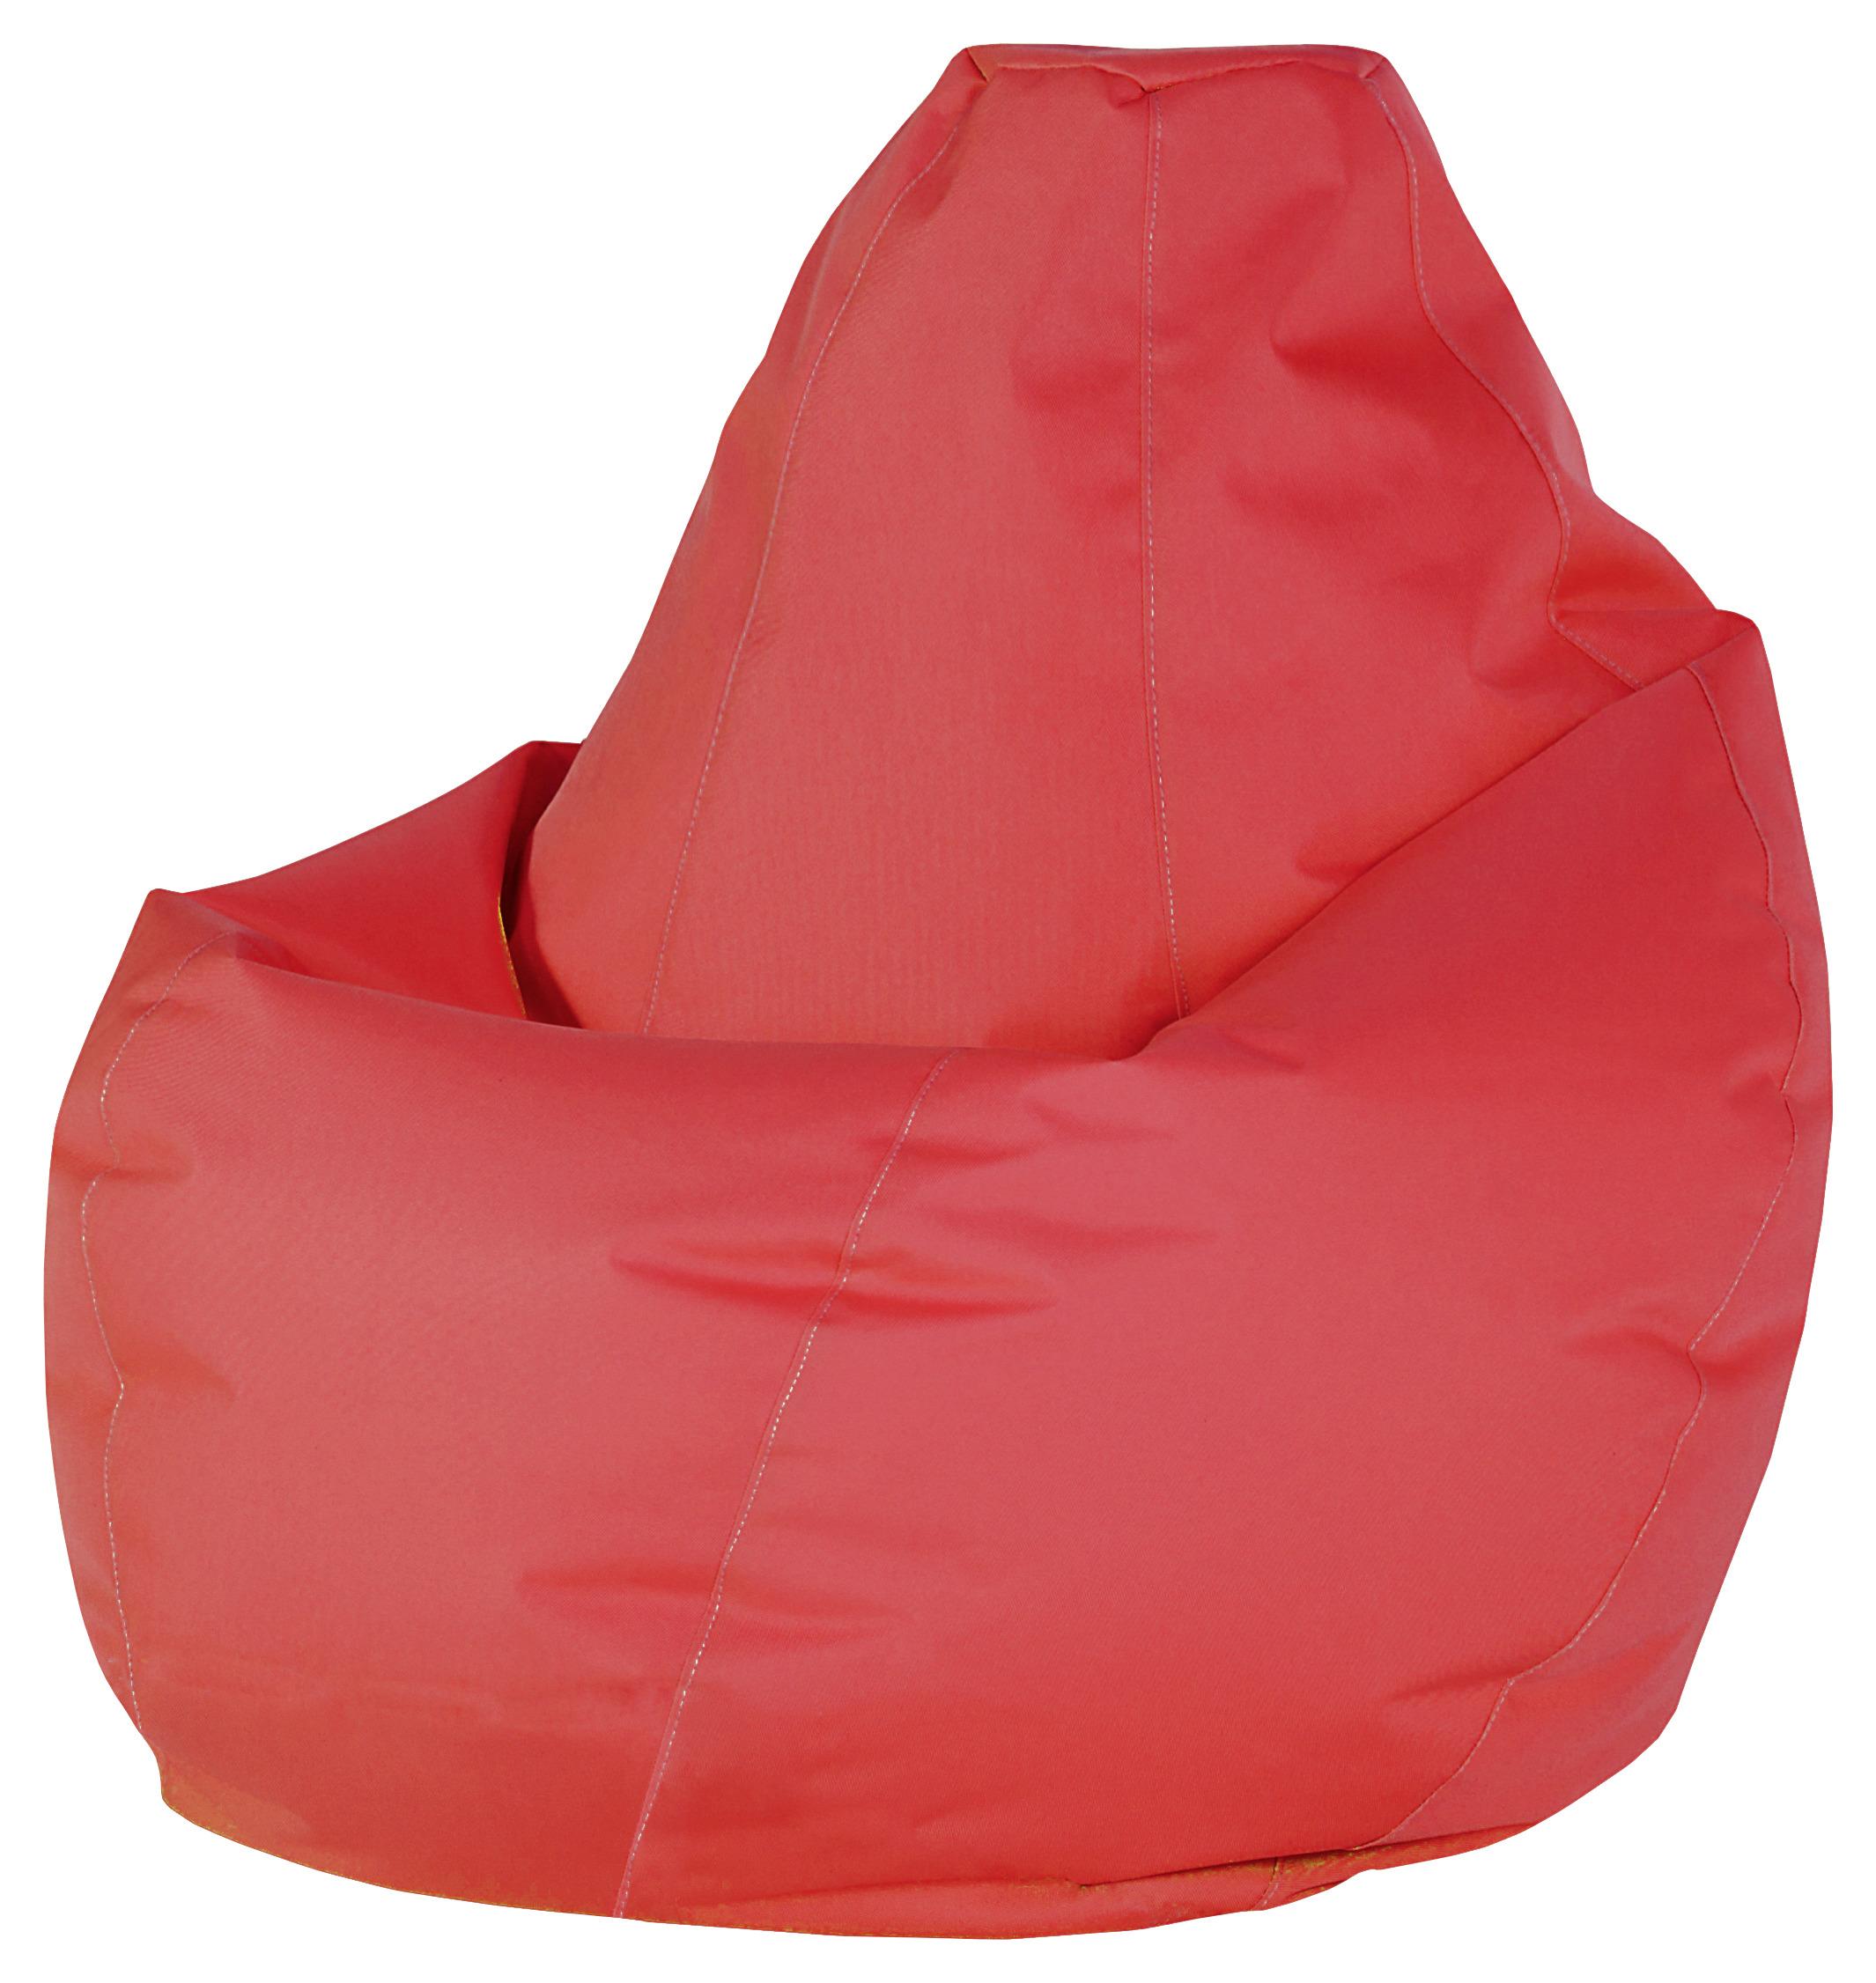 Vreća Za Sjedenje Soft L - crvena, Modern, tekstil (120cm) - Based